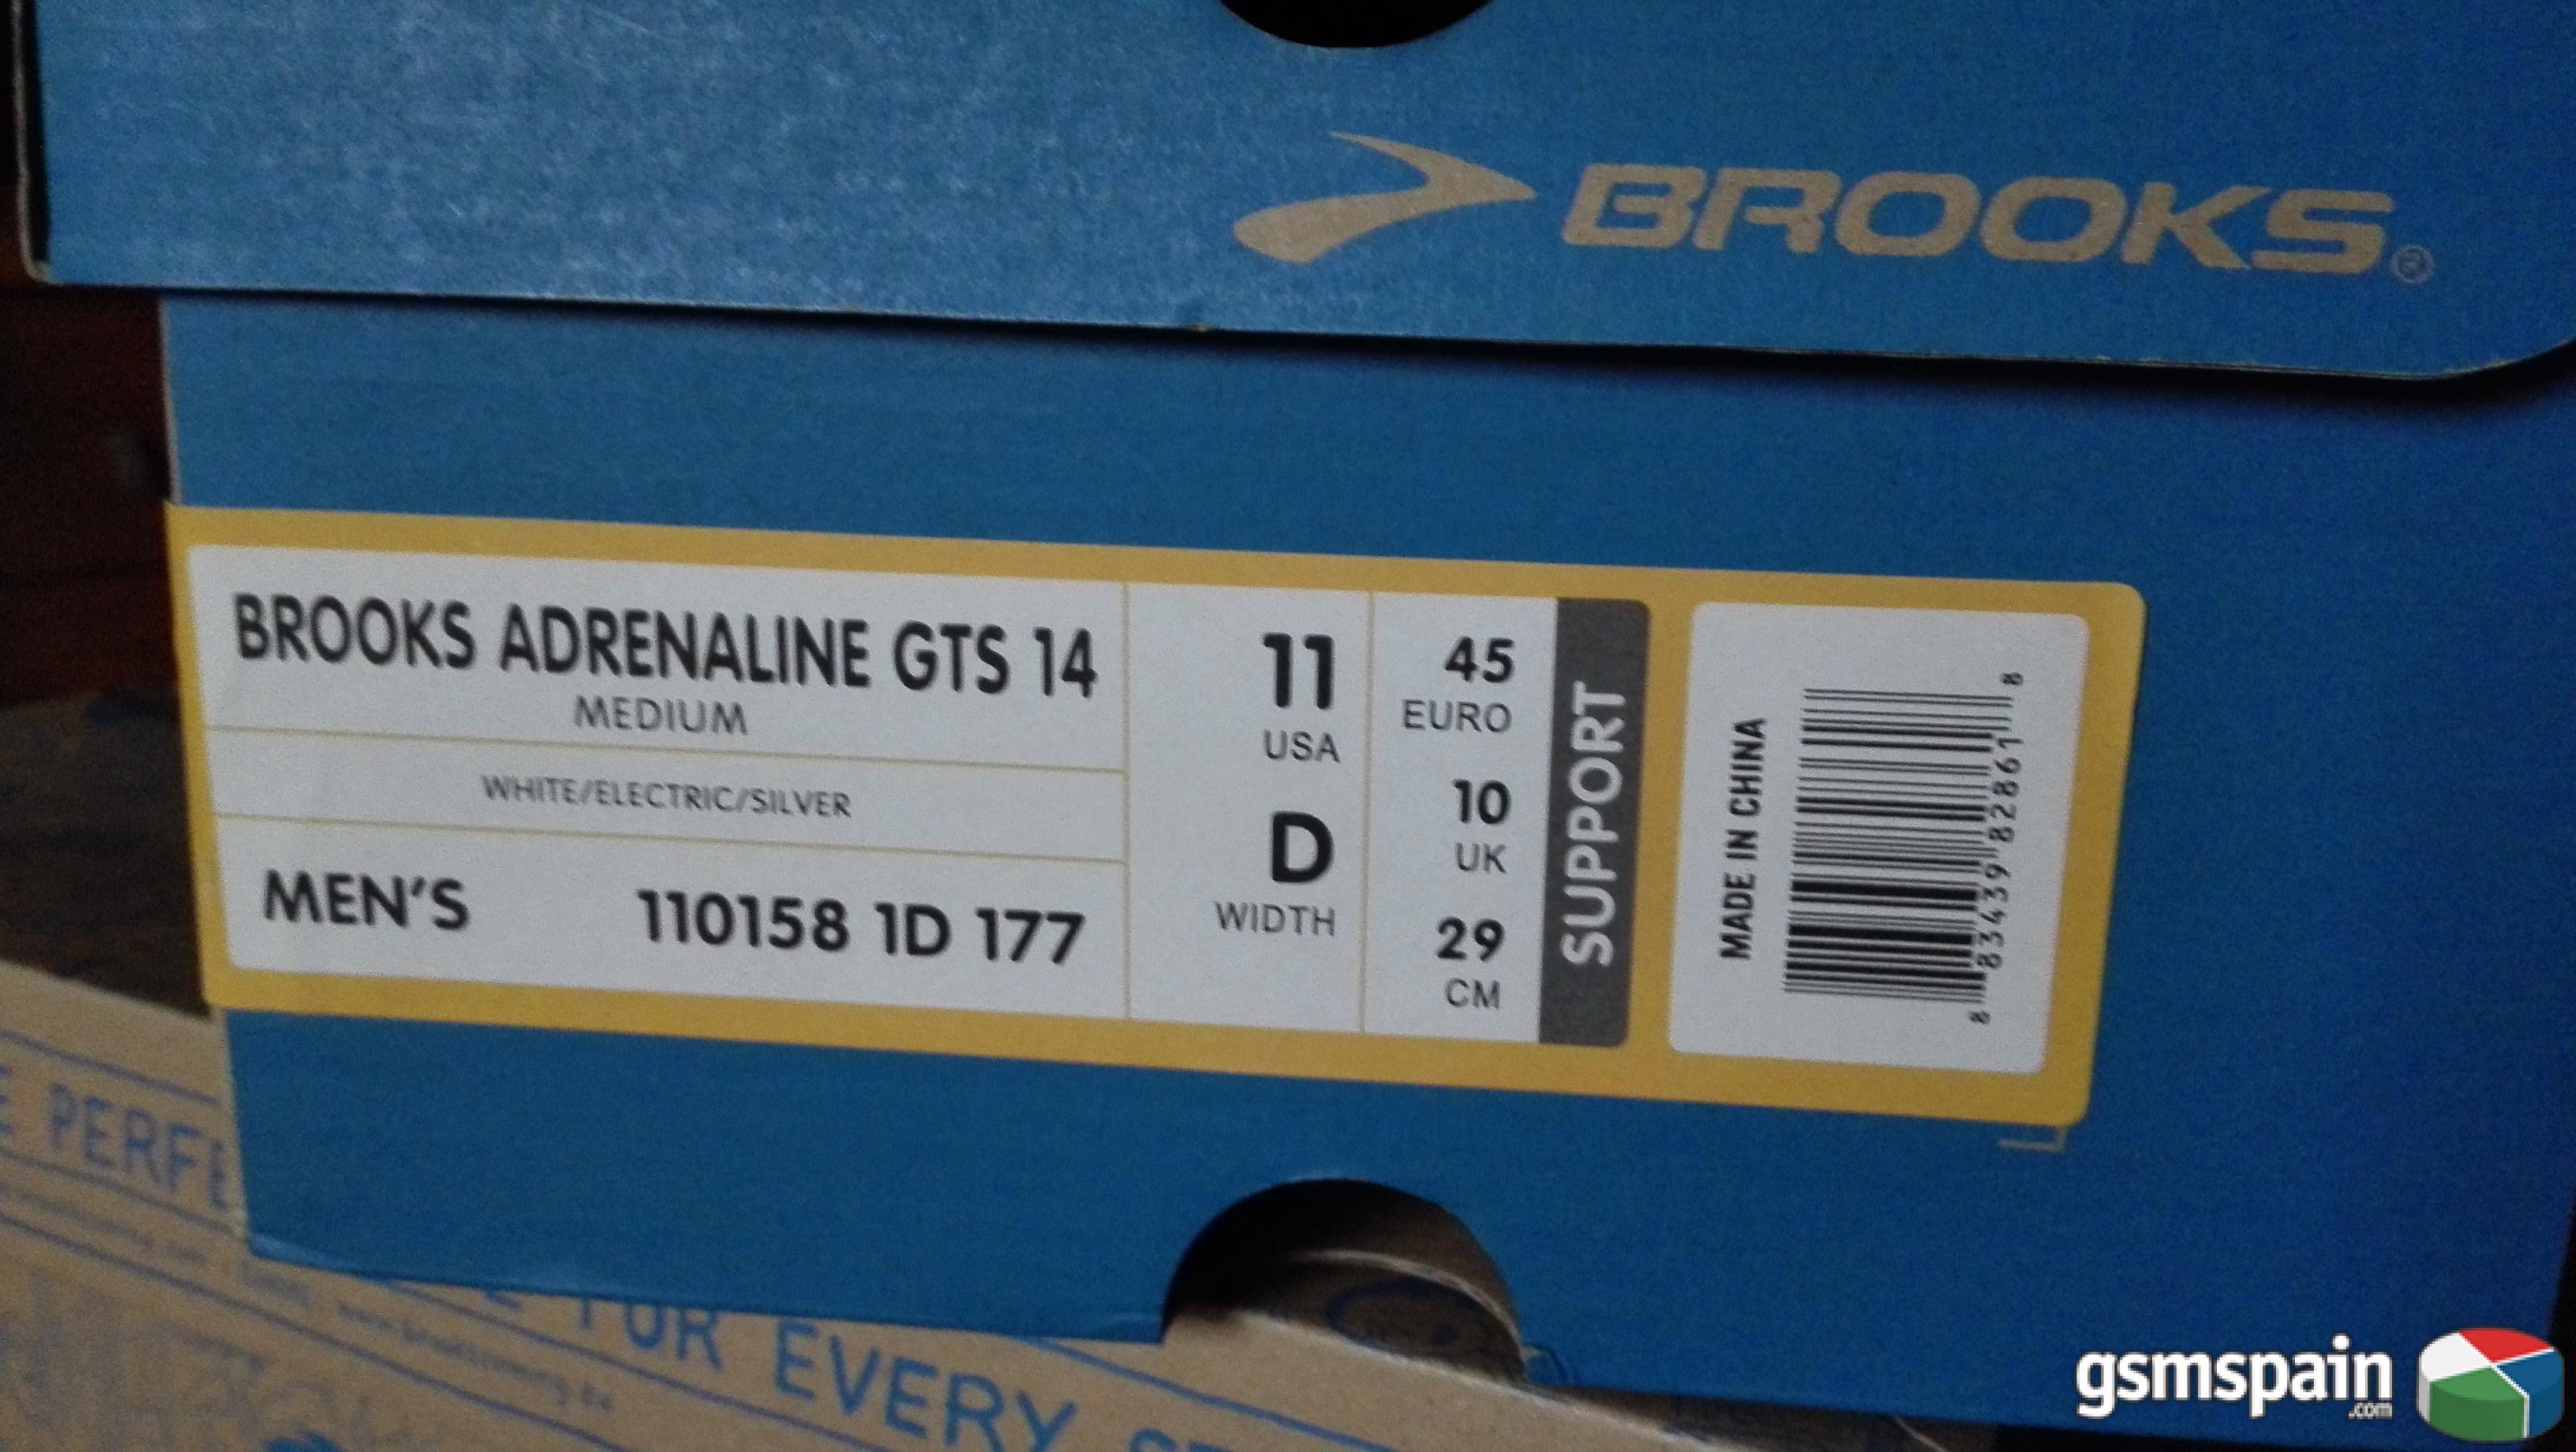 [VENDO] Zapatillas Brooks Adrenaline GTS 14 talla EUR 45 Casi Nuevas